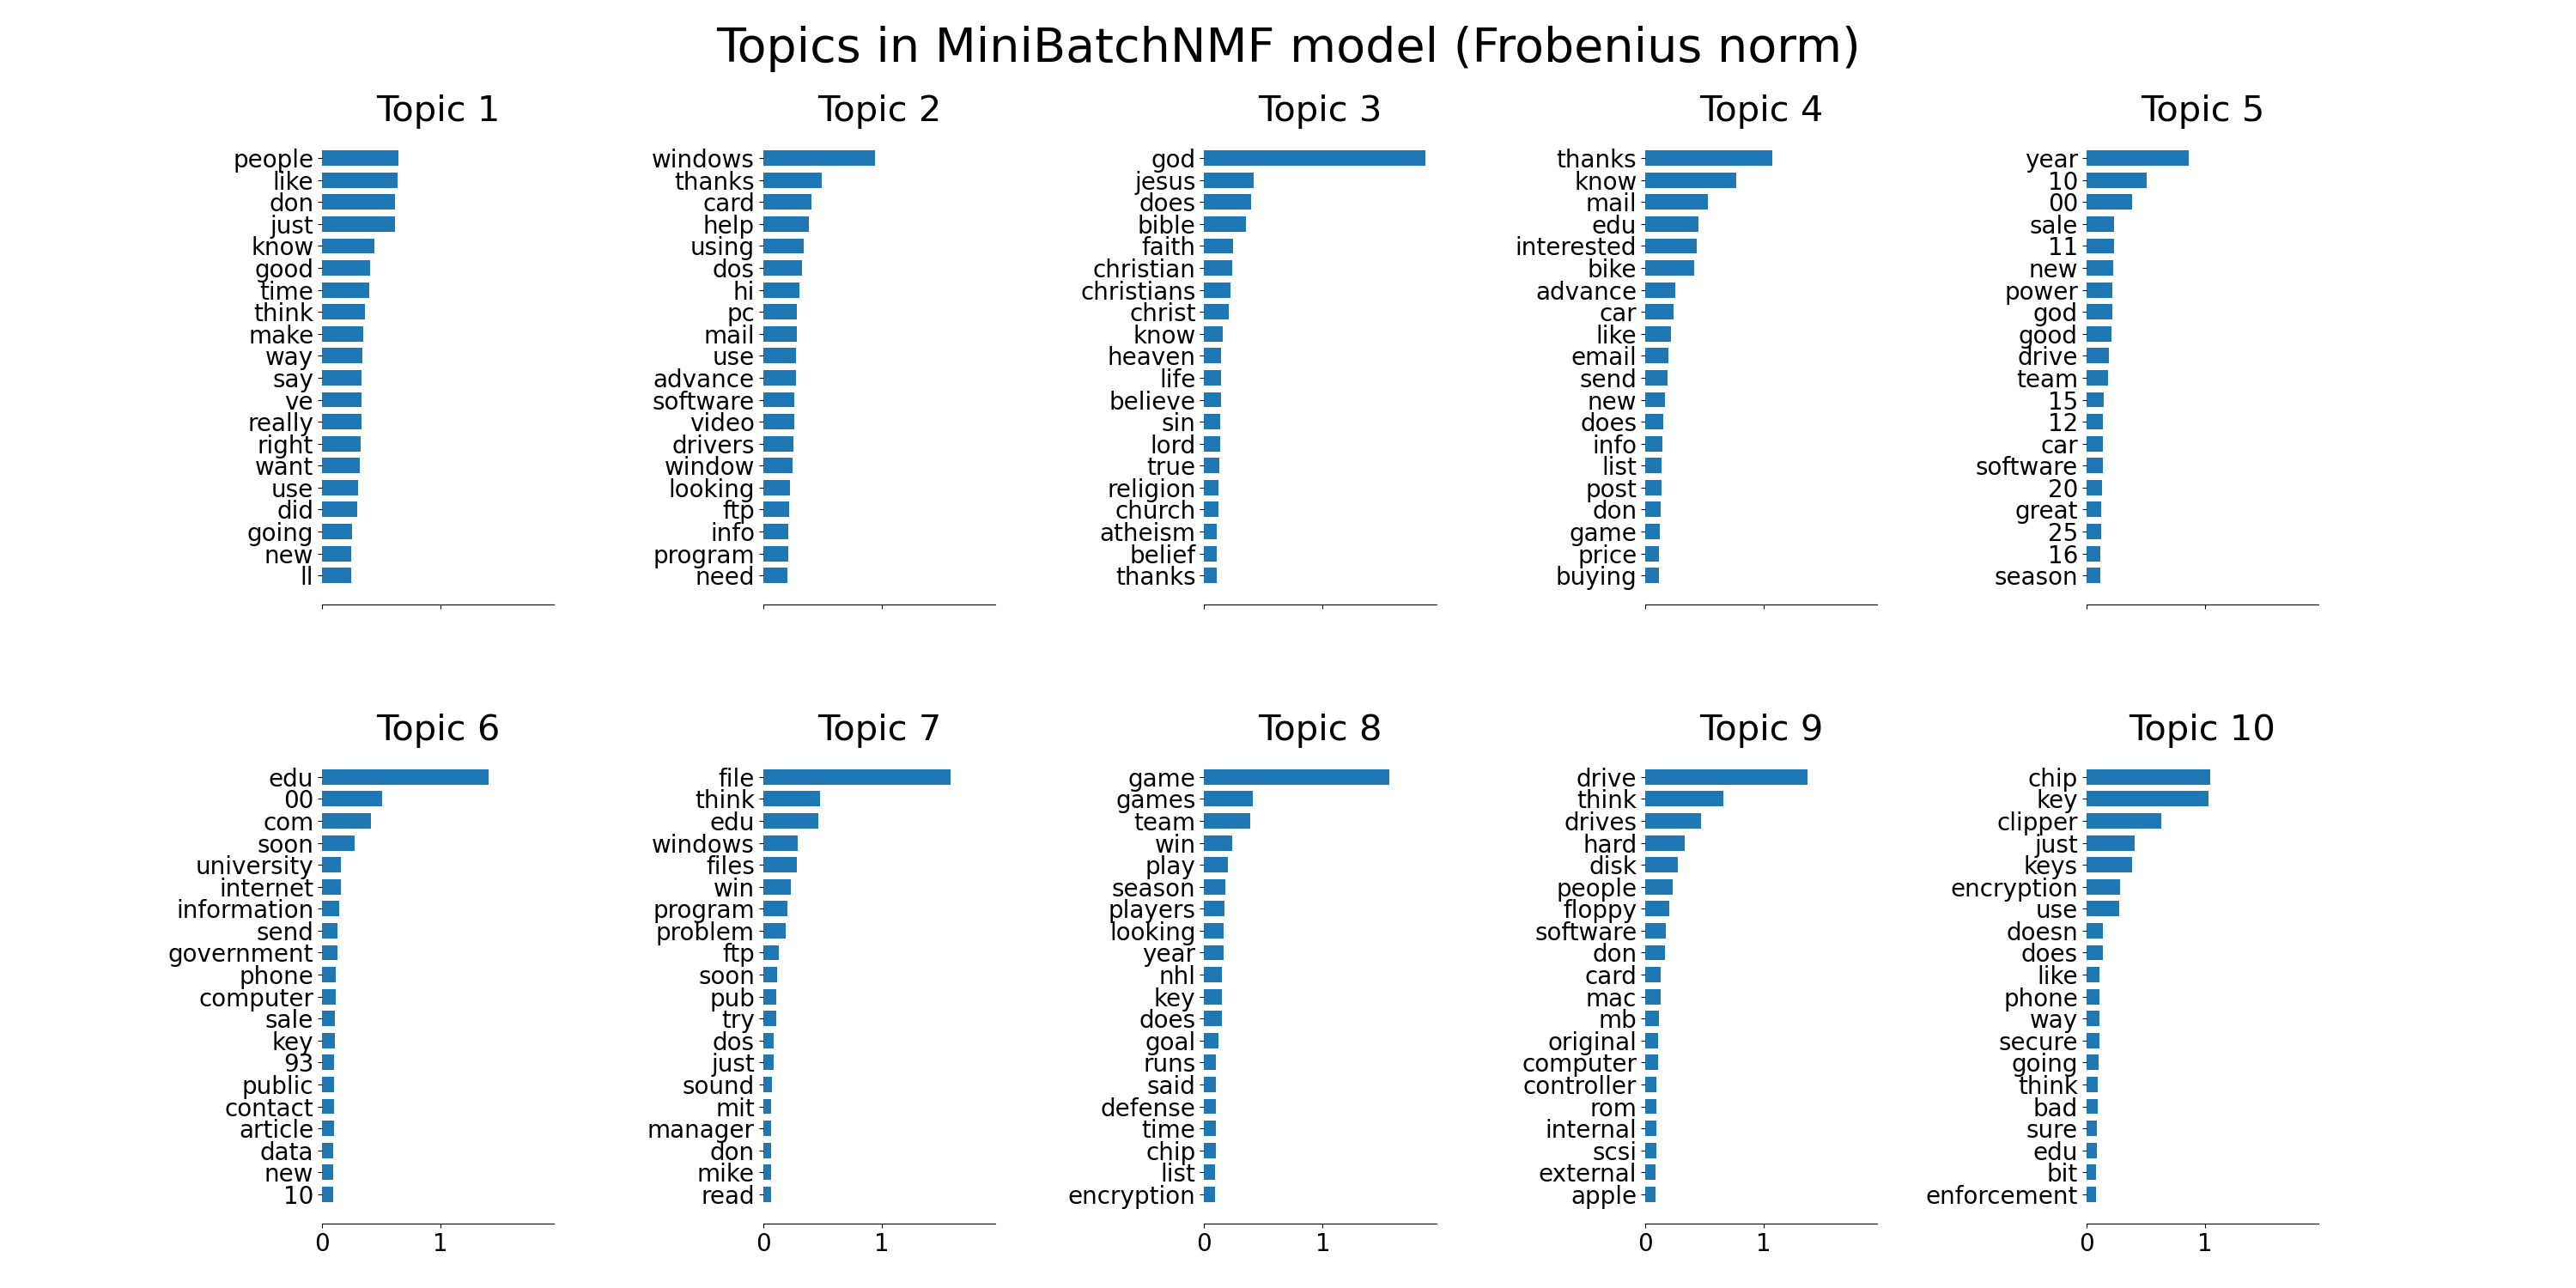 Topics in MiniBatchNMF model (Frobenius norm), Topic 1, Topic 2, Topic 3, Topic 4, Topic 5, Topic 6, Topic 7, Topic 8, Topic 9, Topic 10